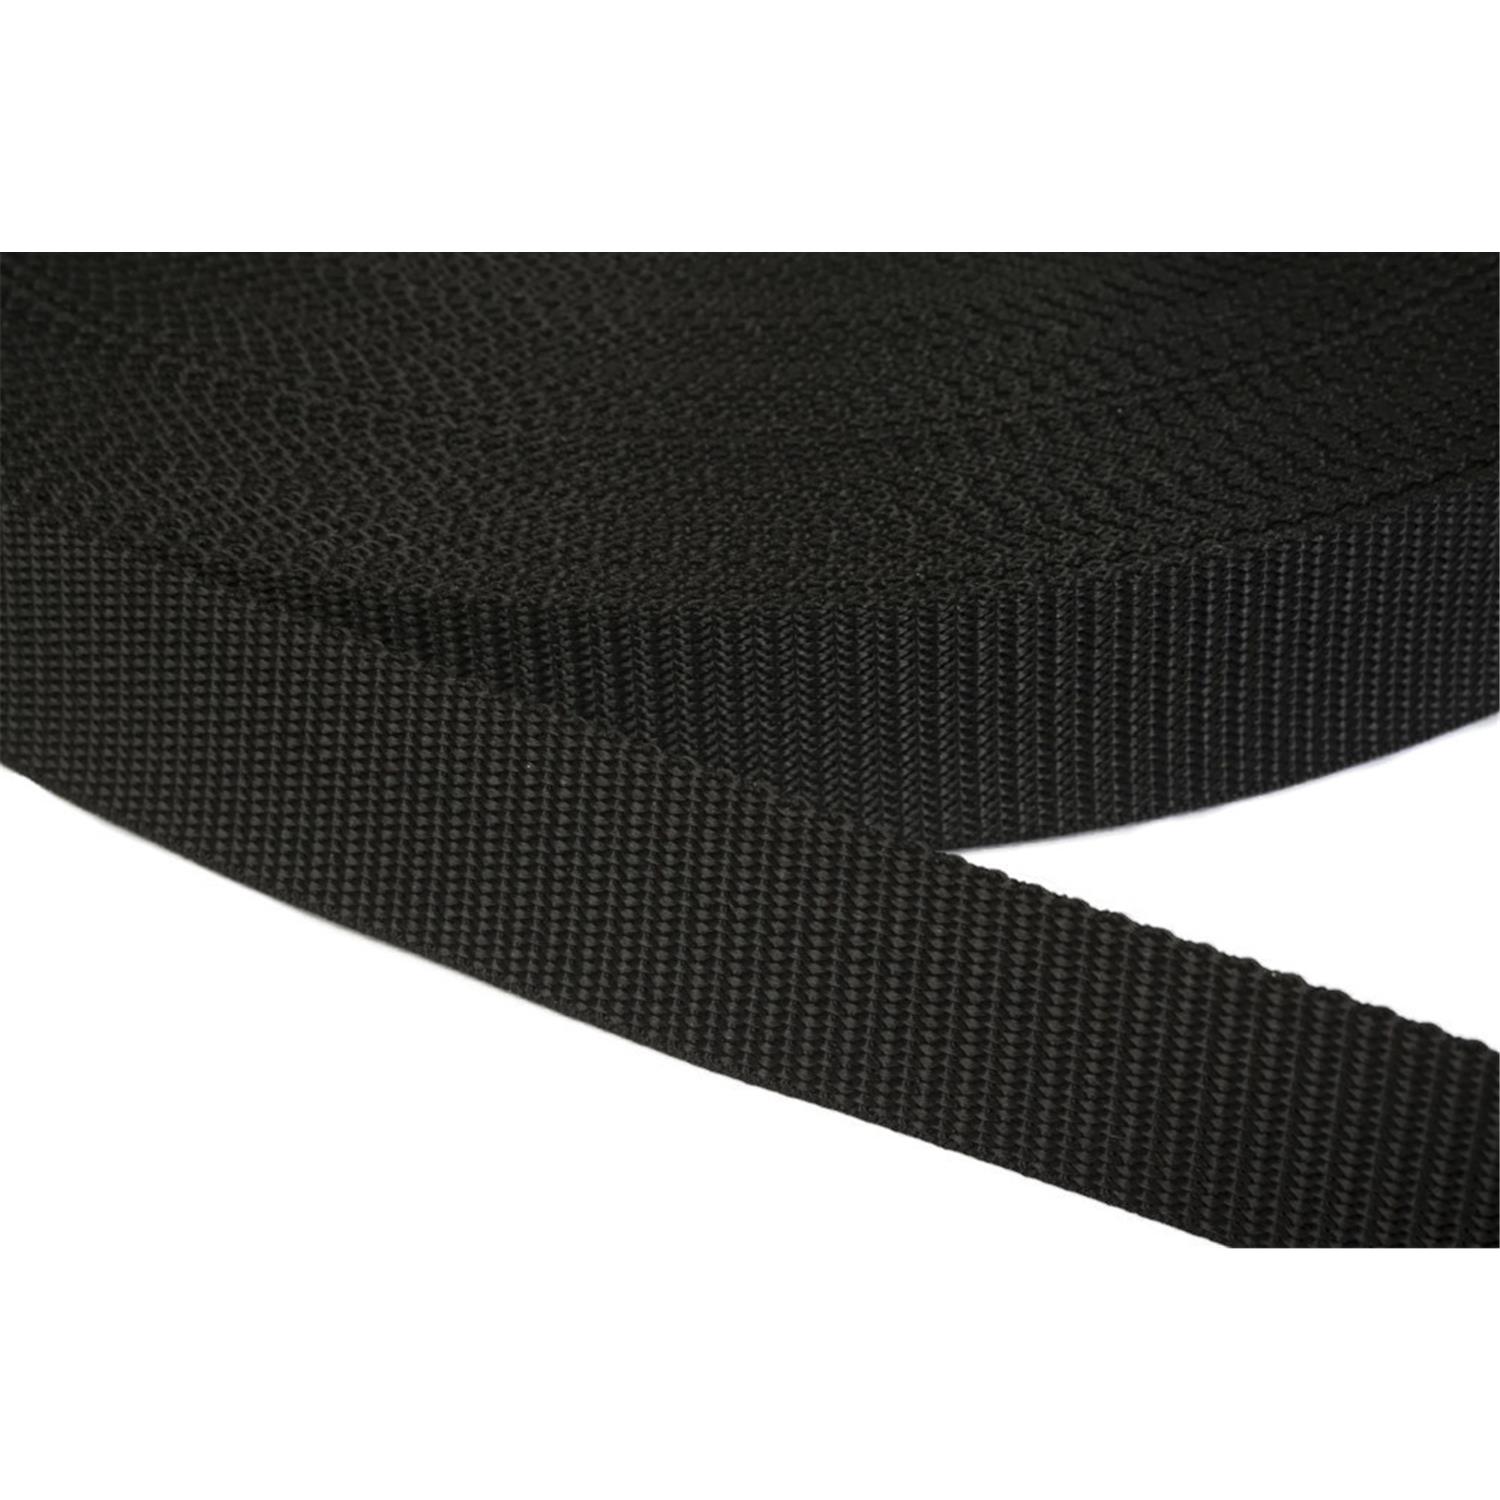 Gurtband 20mm breit aus Polypropylen in 41 Farben 41 - schwarz 6 Meter